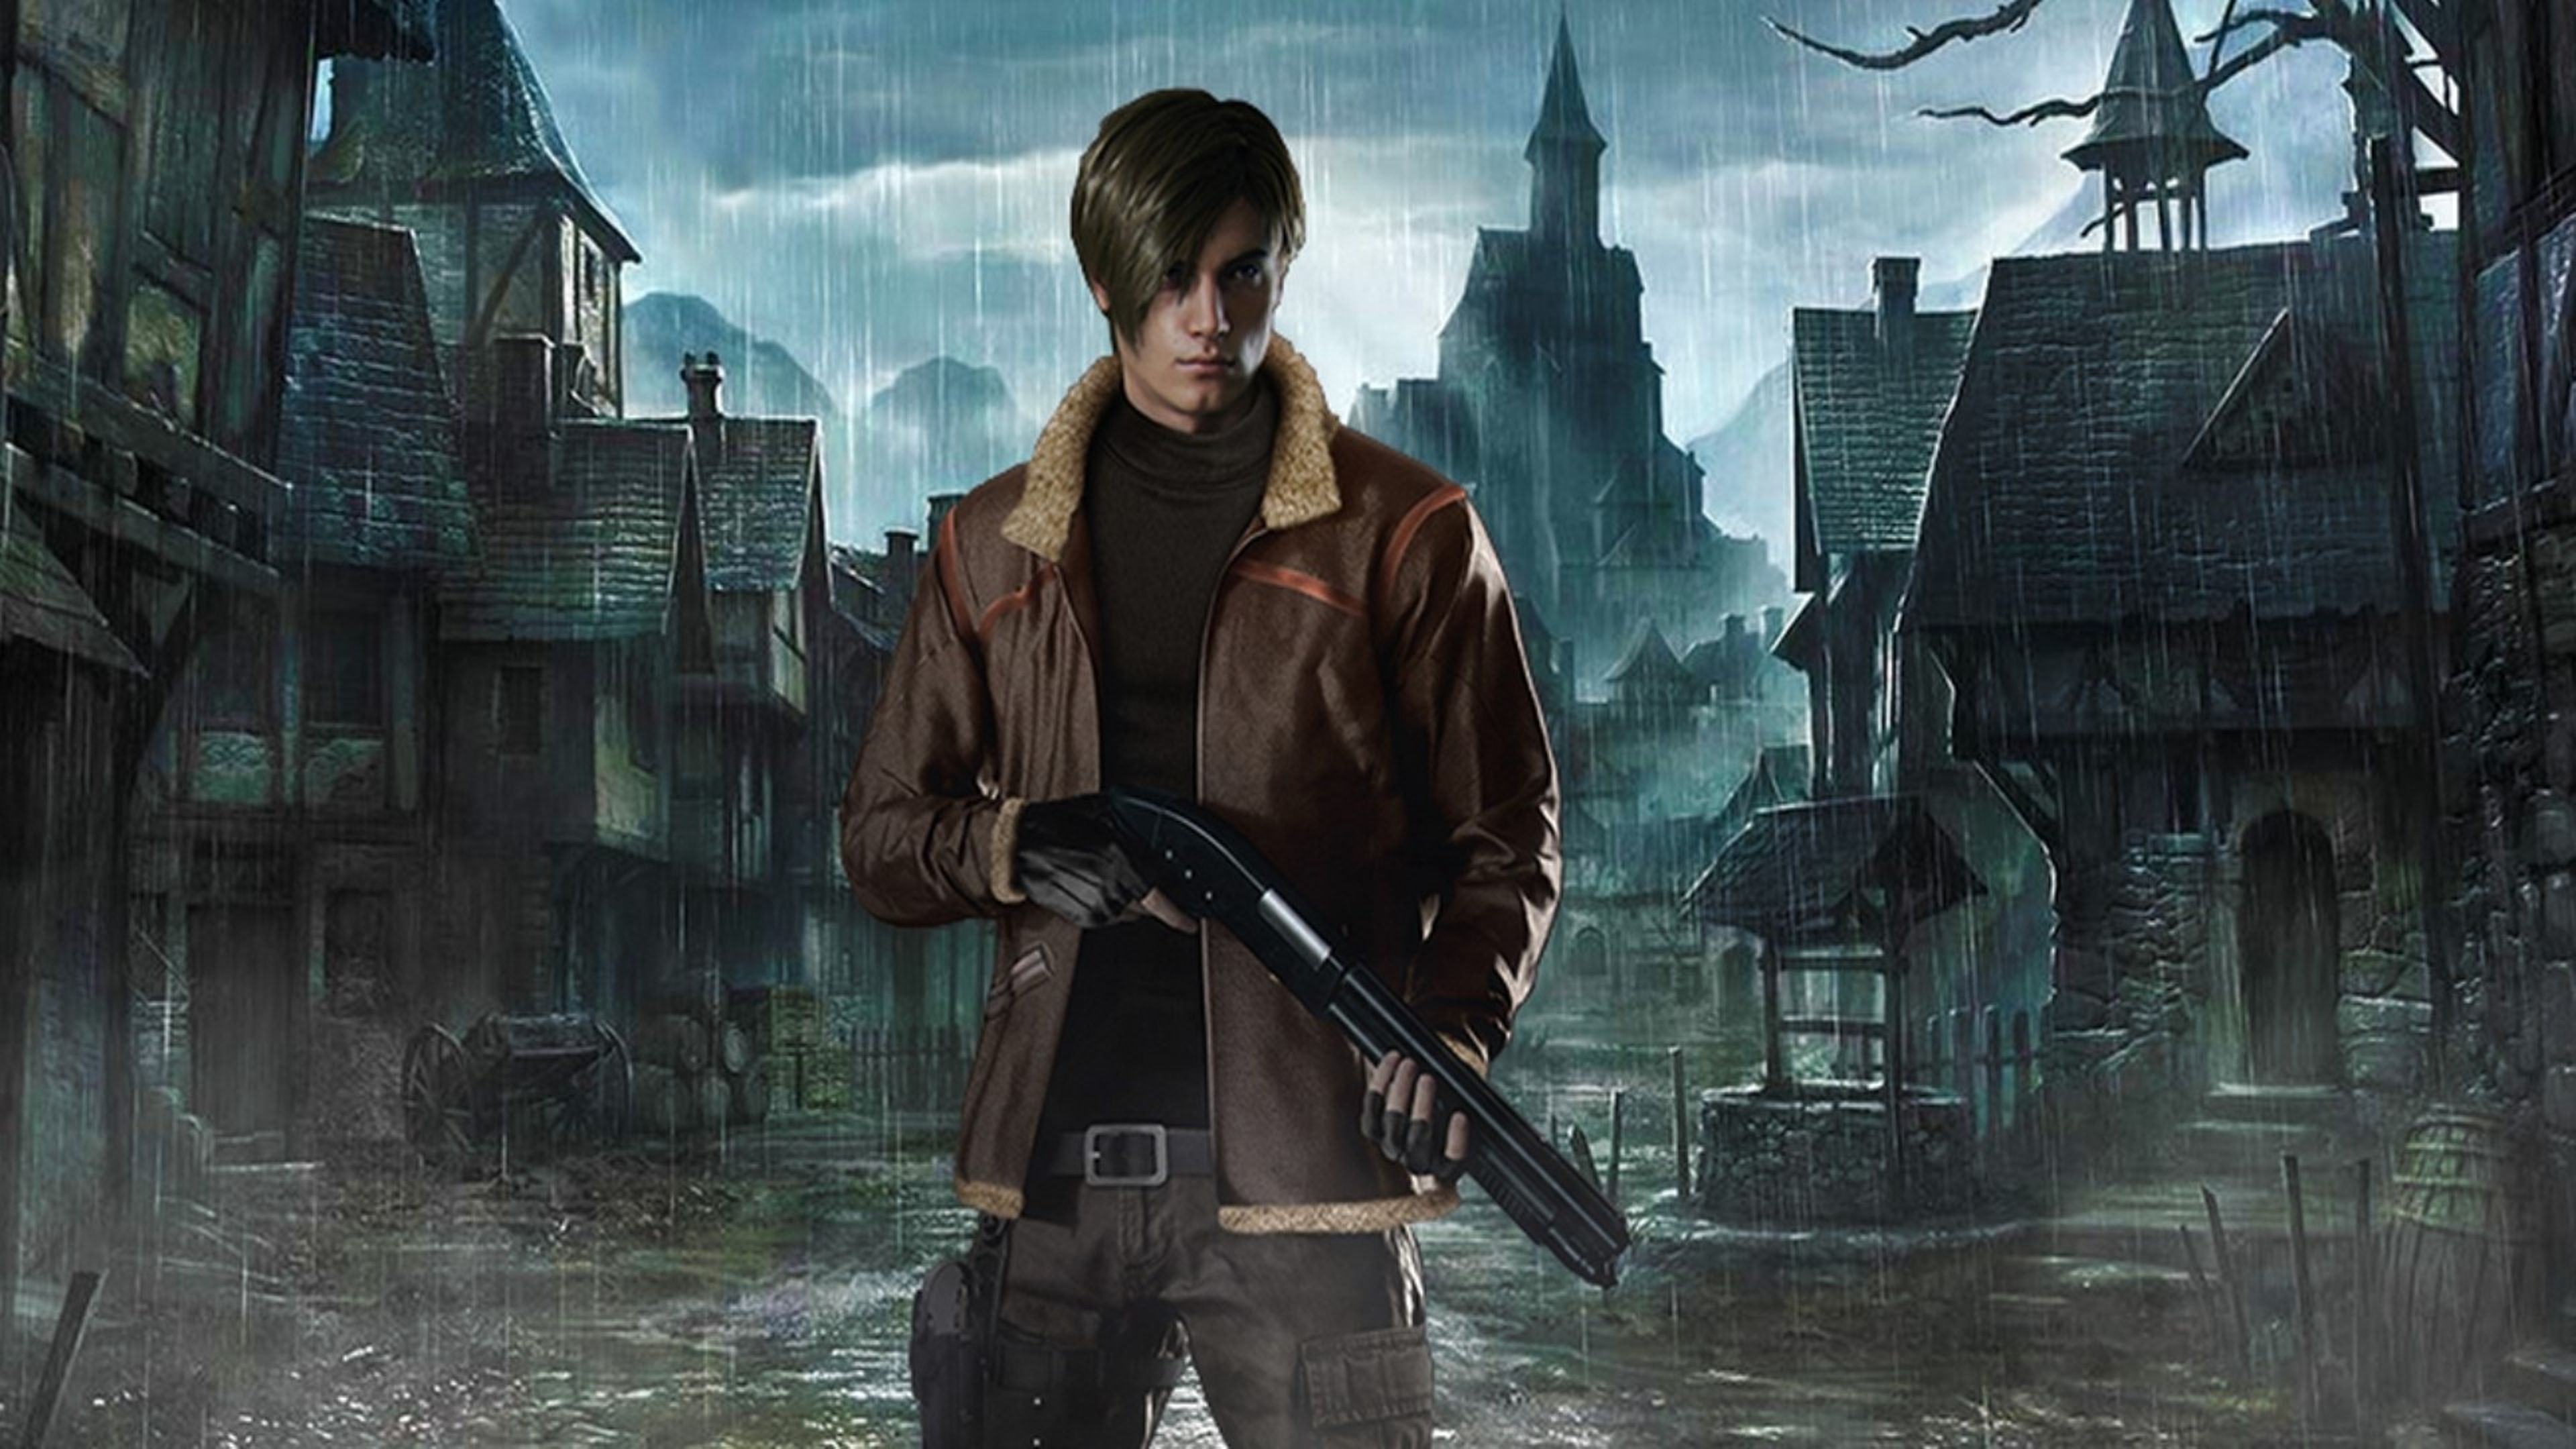 Resident Evil 4 Remake conserva este escenario del juego original y Capcom  promete hacerlo más interesante con nuevas mejoras